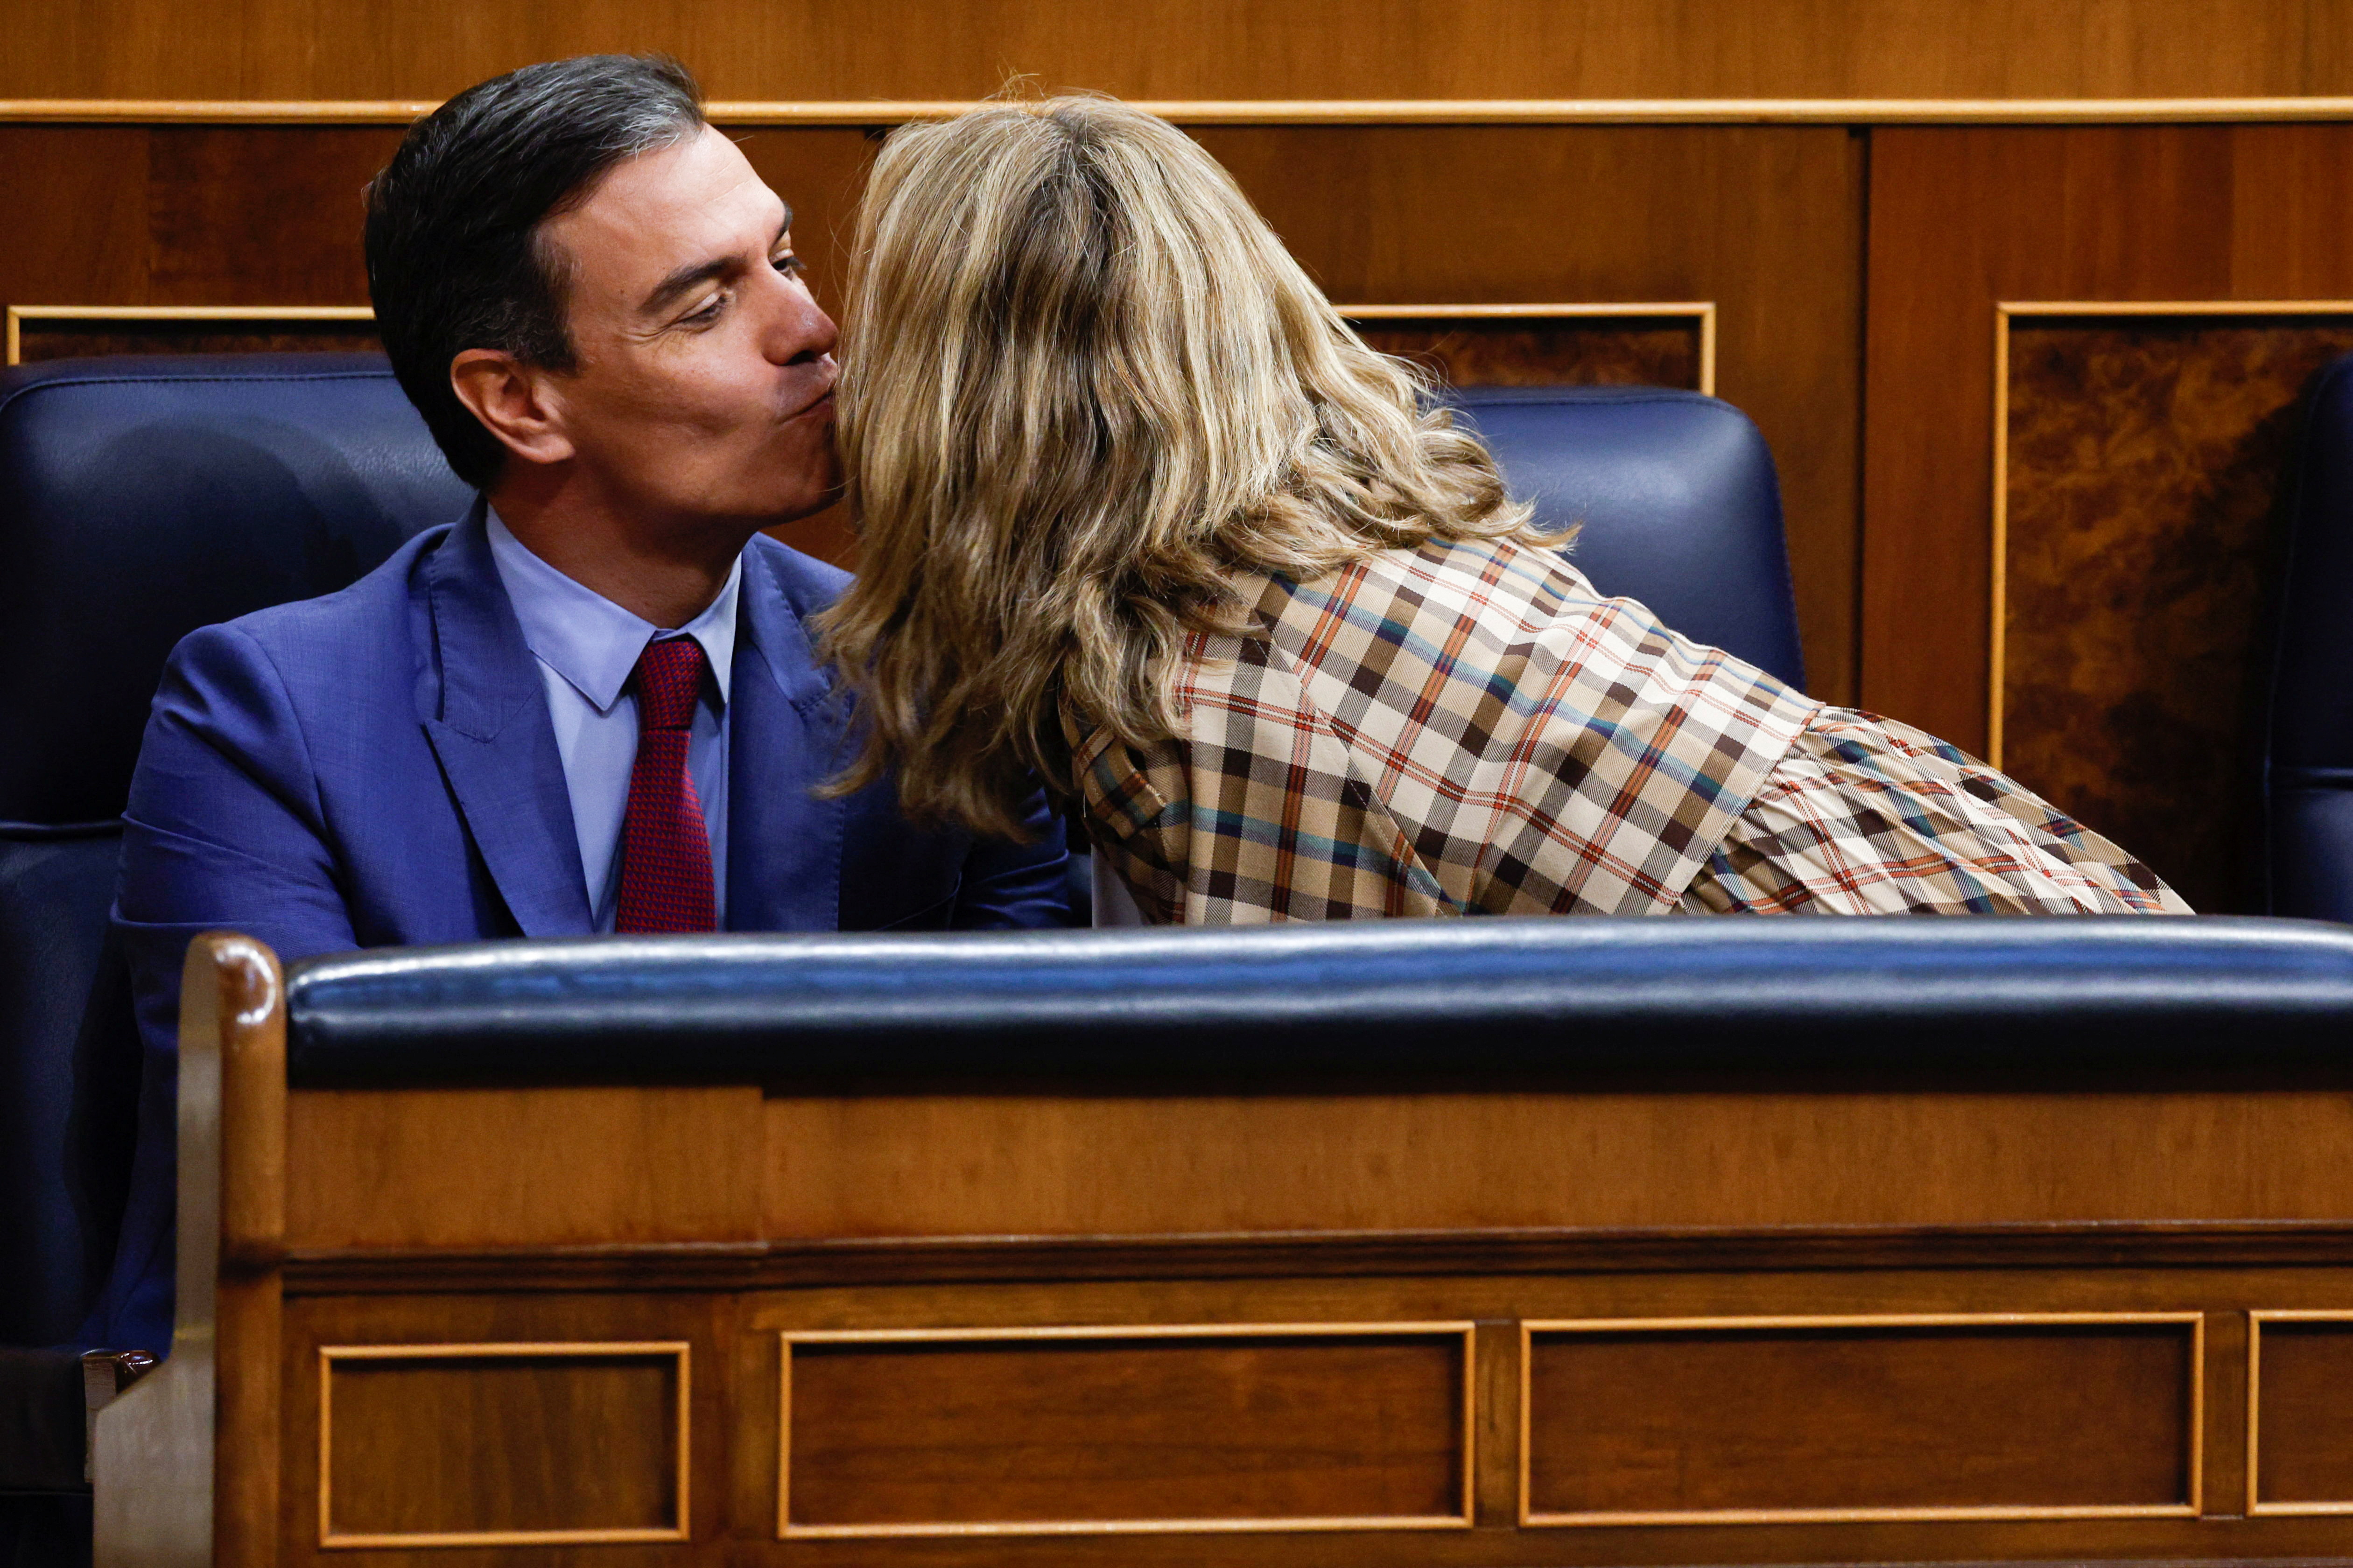 Pedro Sánchez y Yolanda Díaz en el Congreso (Foto: REUTERS/Susana Vera)